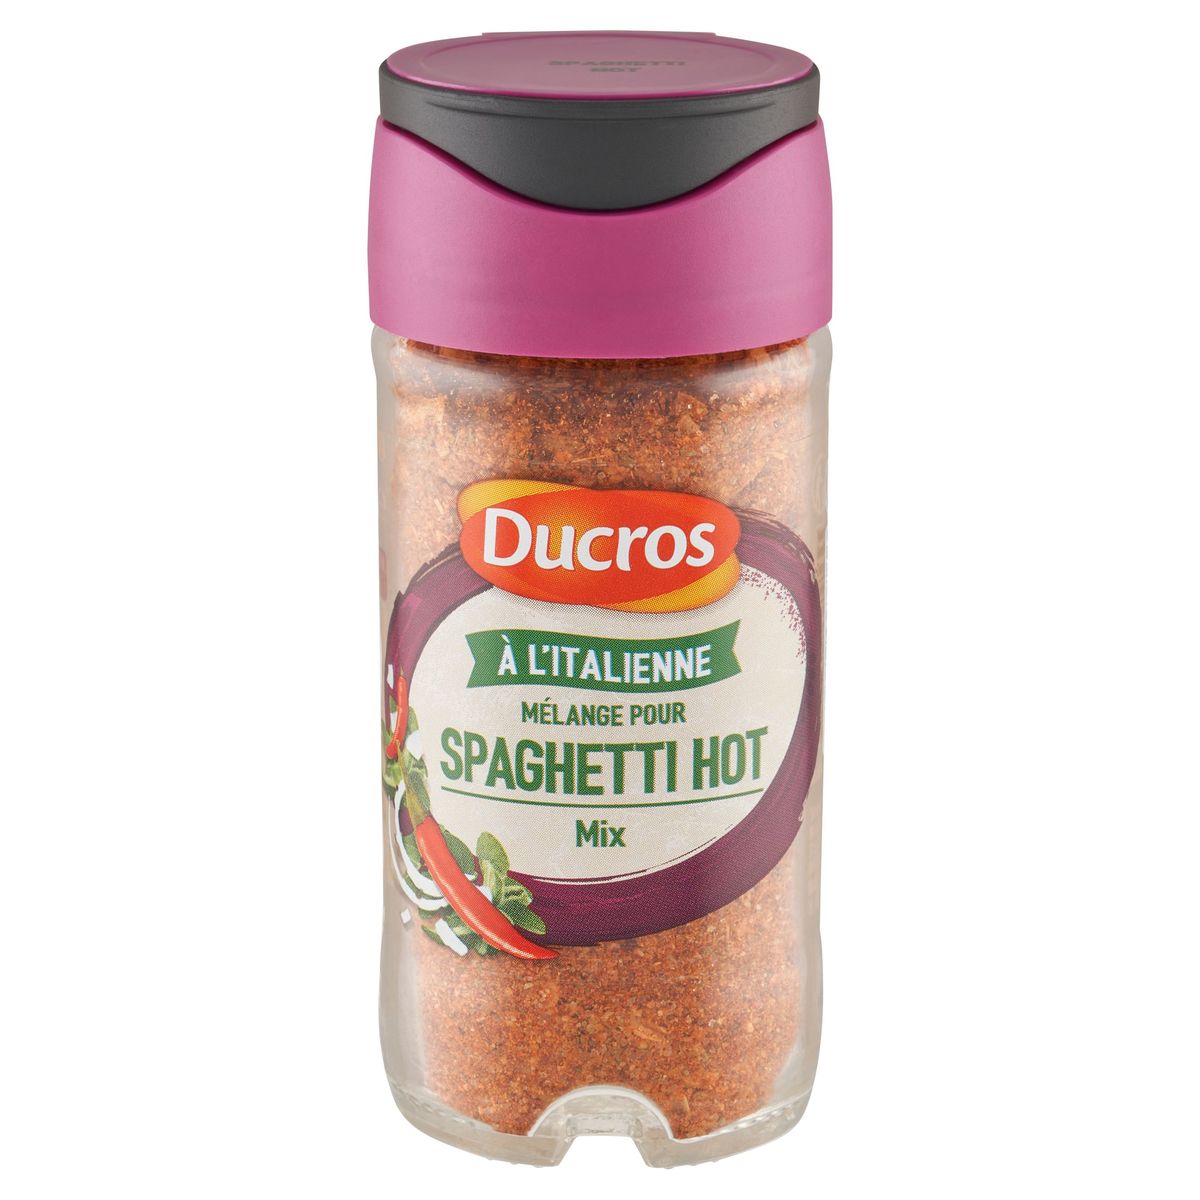 Ducros Spaghetti Hot Mix 65 g